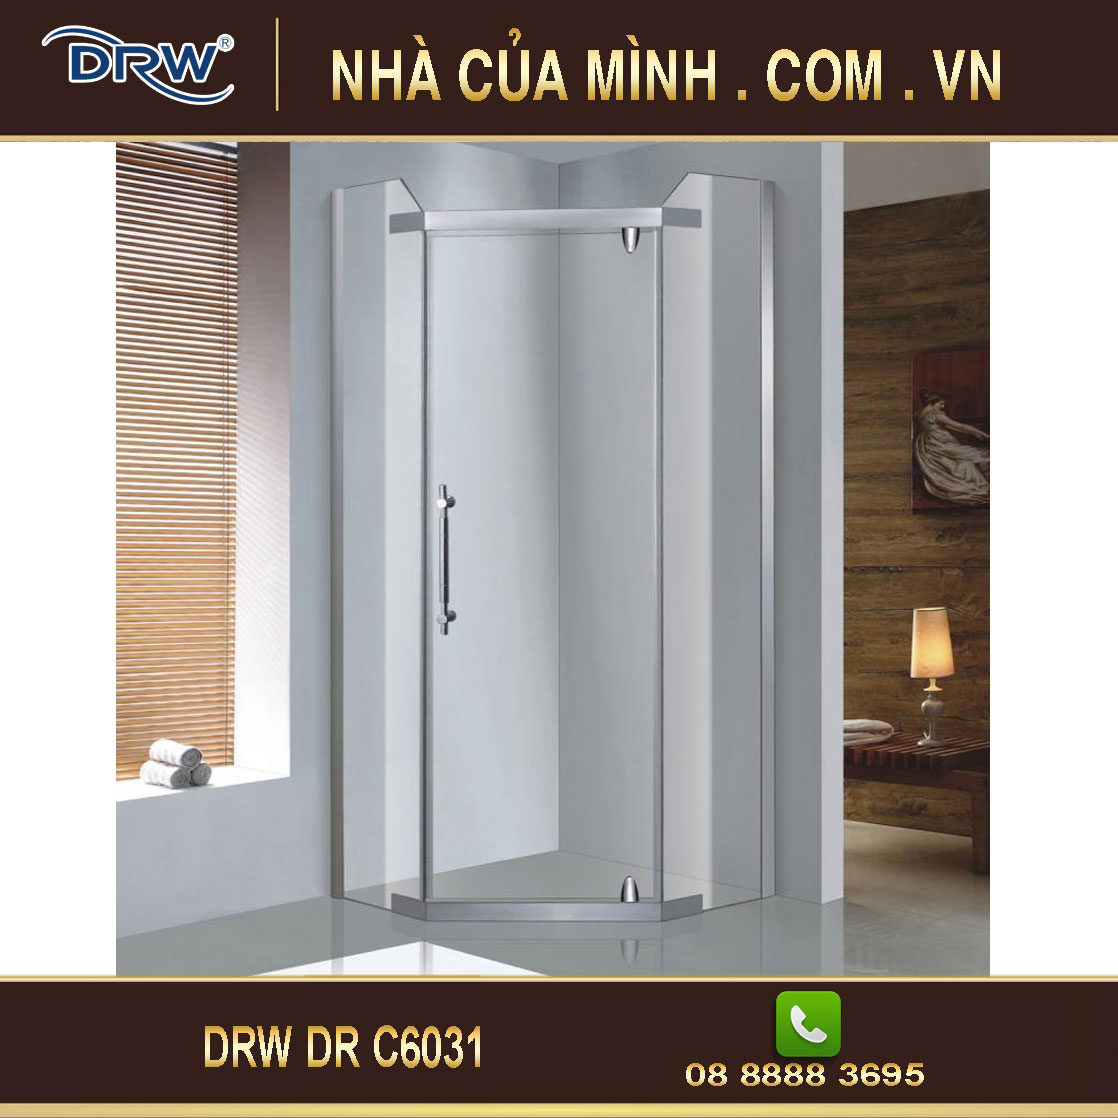 Vách kính phòng tắm DRW DR C6031 cao cấp